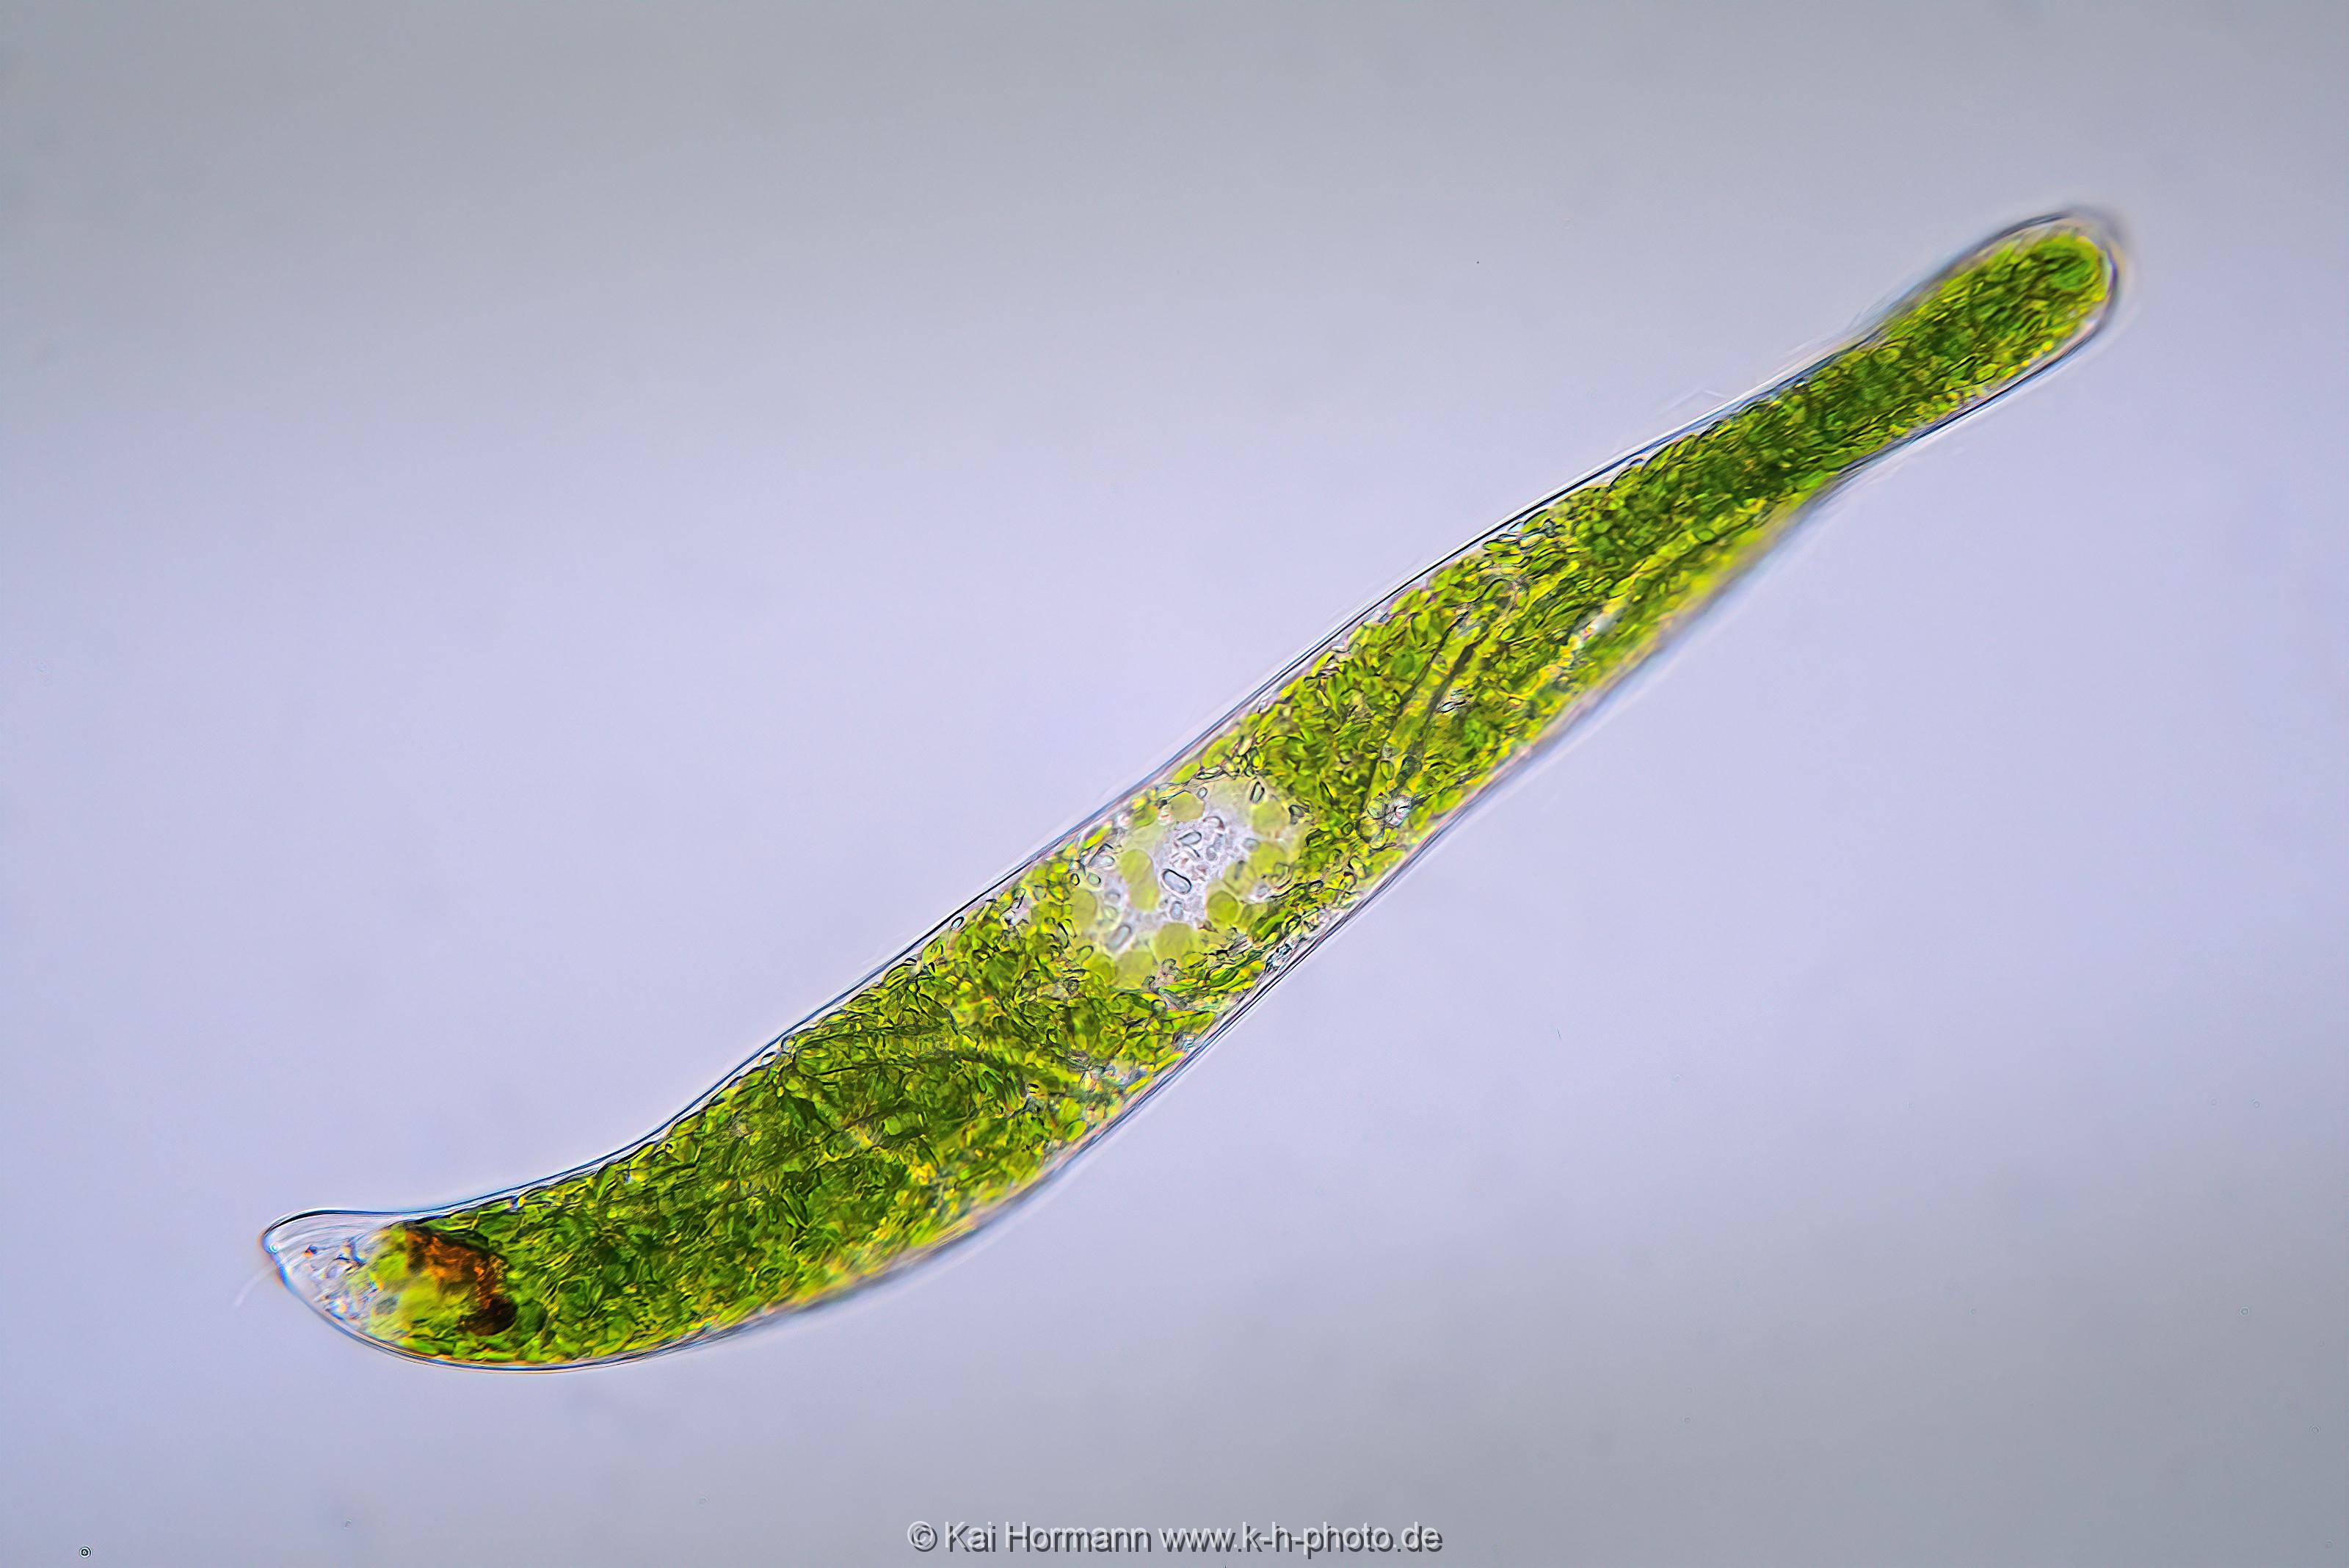 Augenflagellat. Mikrofotografie: Mikroskopische Aufnahmen von Einzellern, Algen und Kleinstlebewesen.